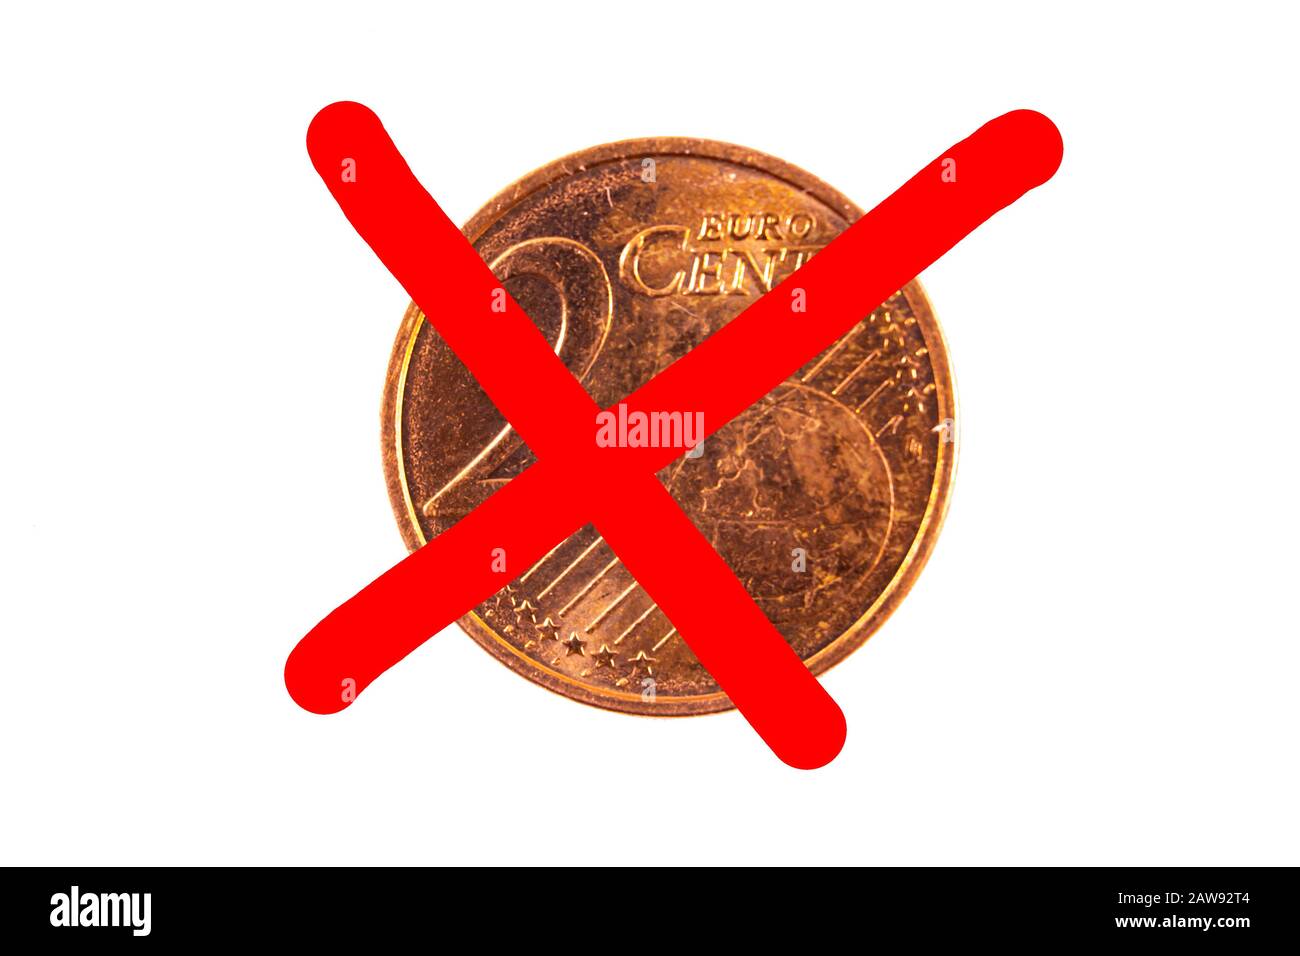 la moneda de 2 céntimos de euro se cruzó con una x roja, concepto de unión europea que prohíbe las monedas de 2 céntimos, sobre fondo blanco Foto de stock